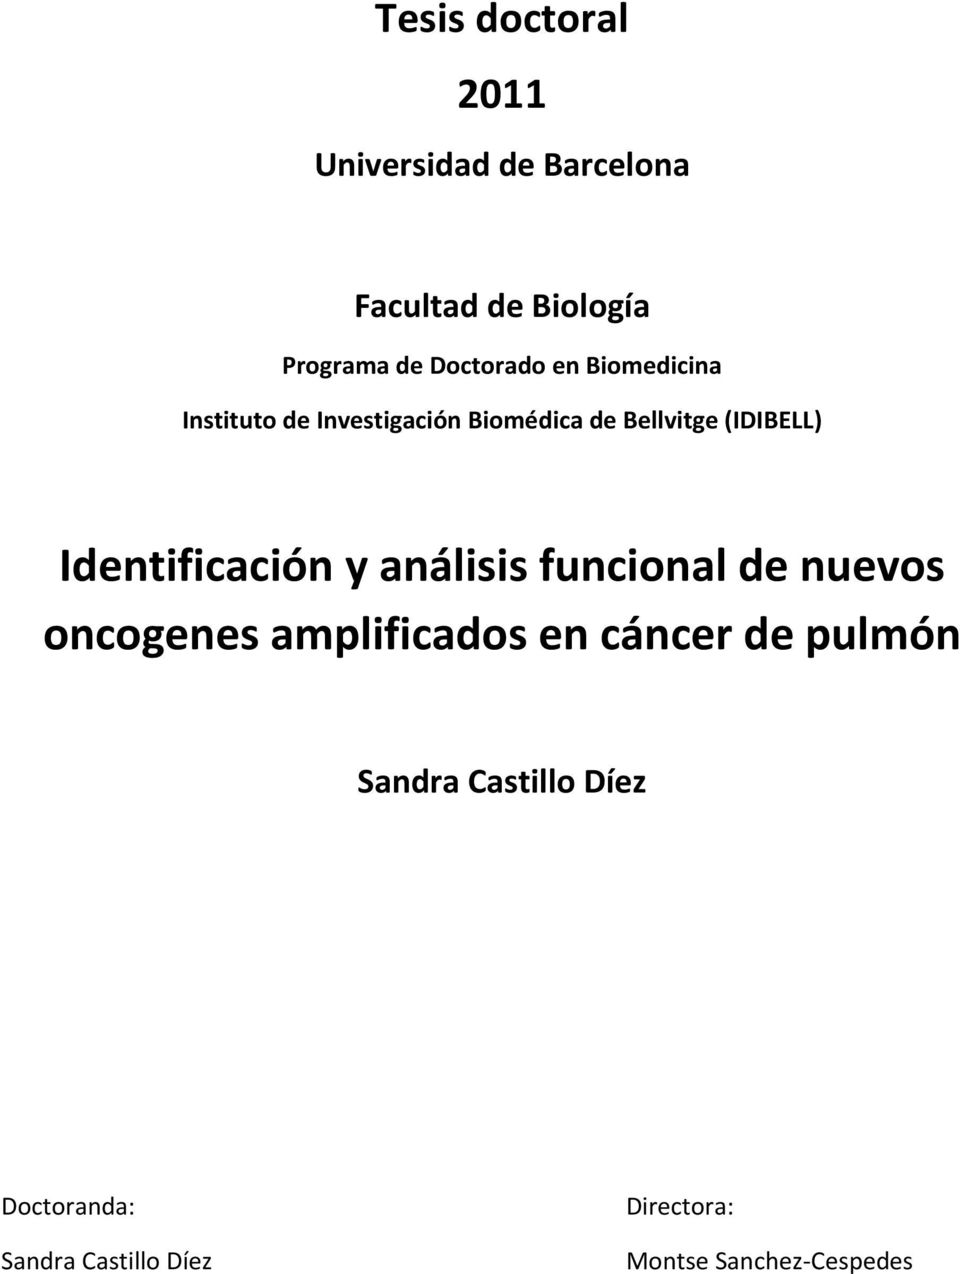 Identificación y análisis funcional de nuevos oncogenes amplificados en cáncer de